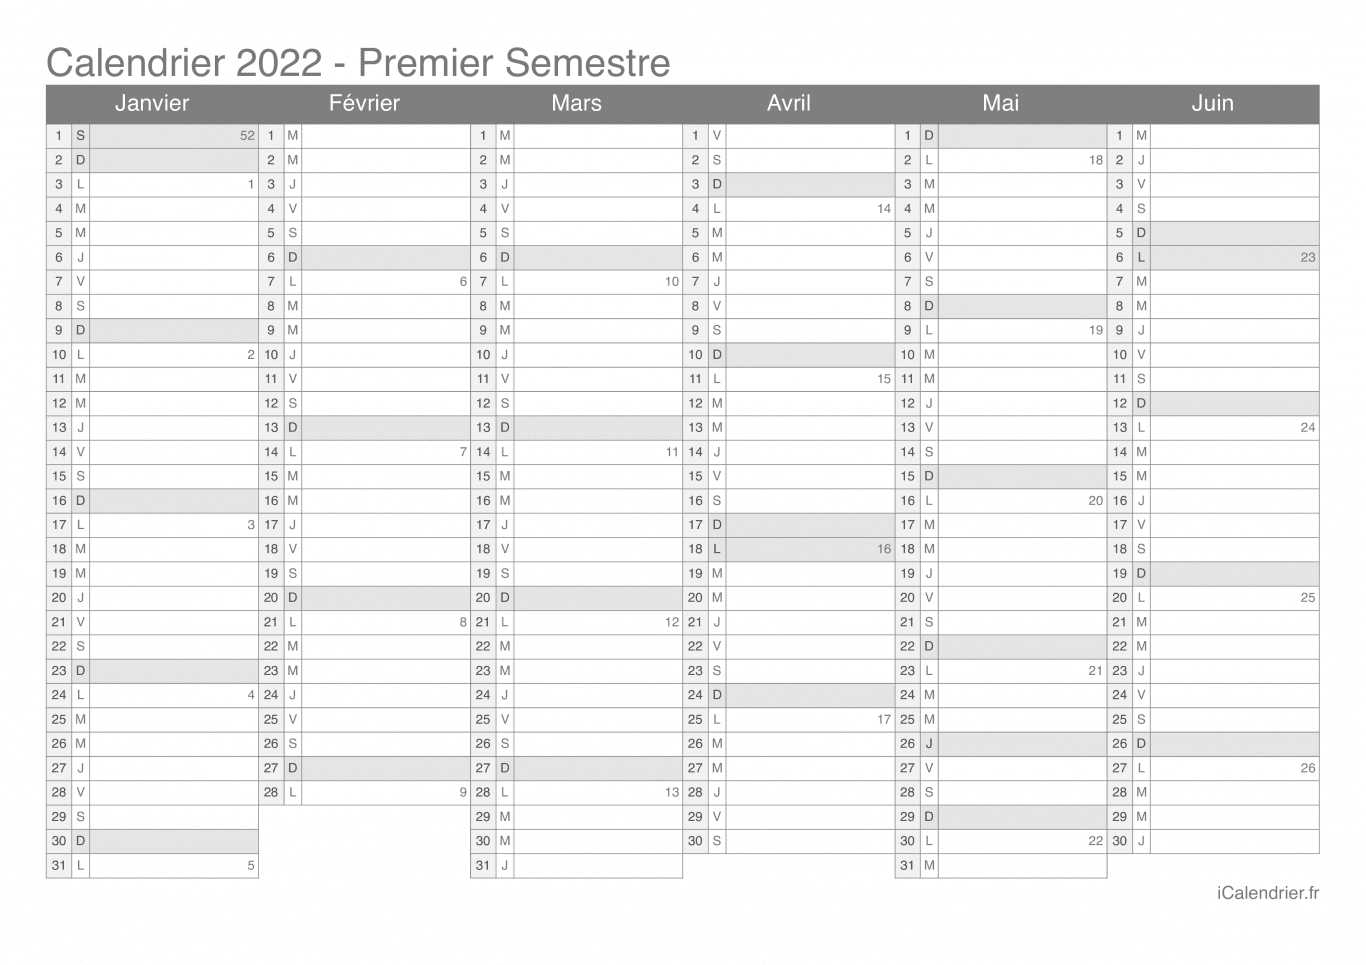 Calendrier par semestre avec numéros des semaines 2022